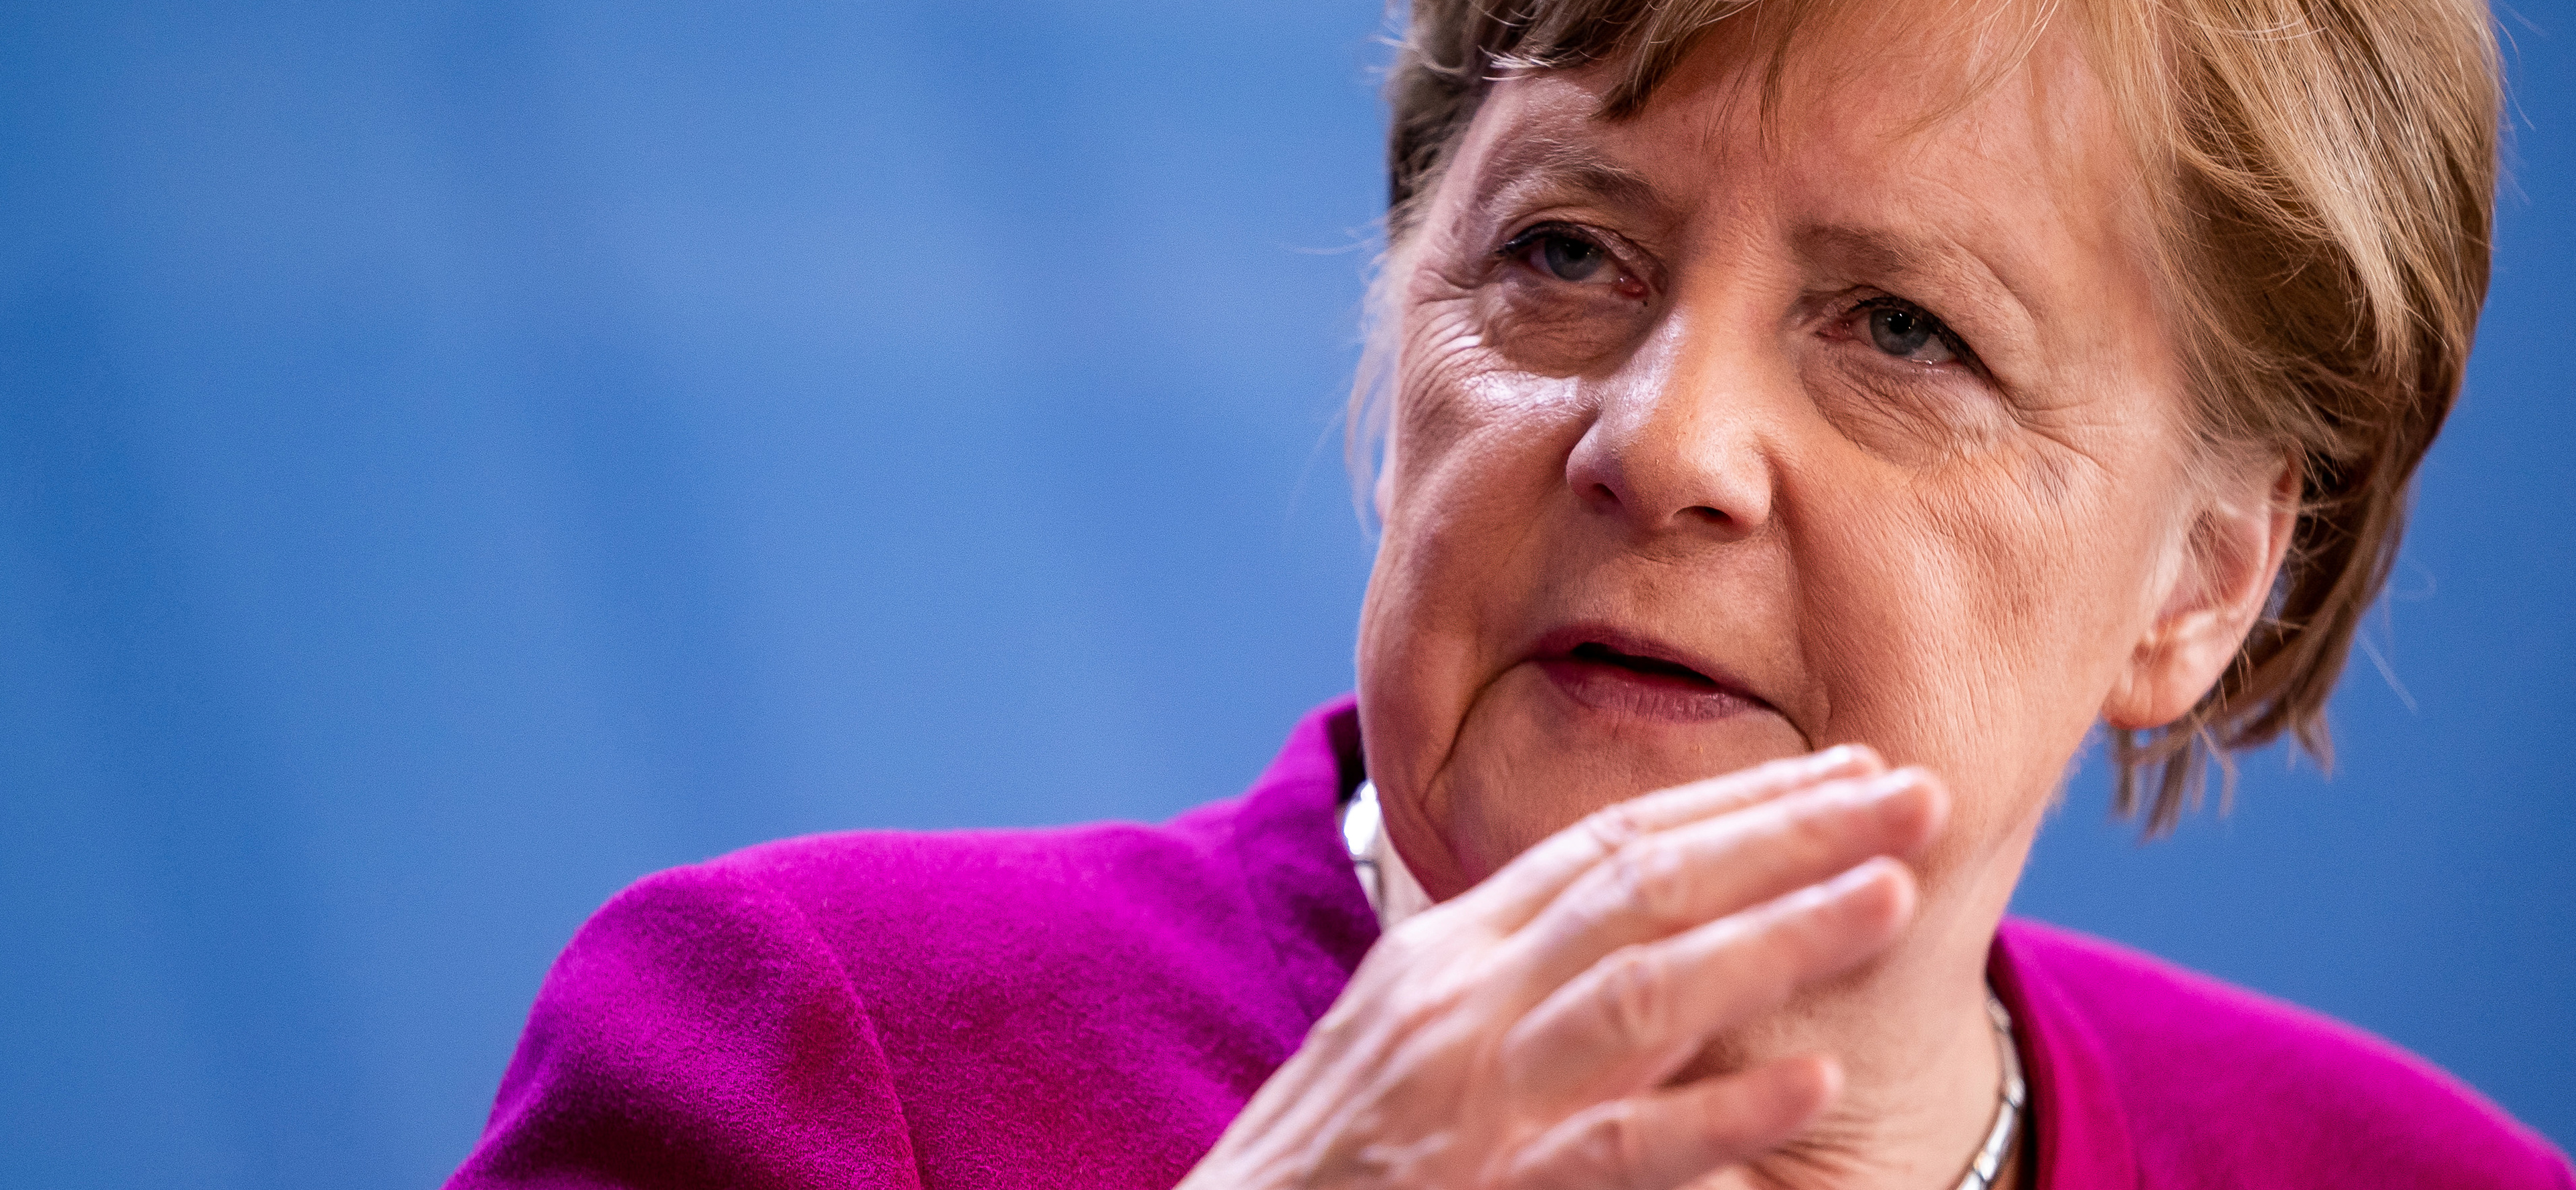 La canciller Angela Merkel (Michel Kappeler/Pool via REUTERS)